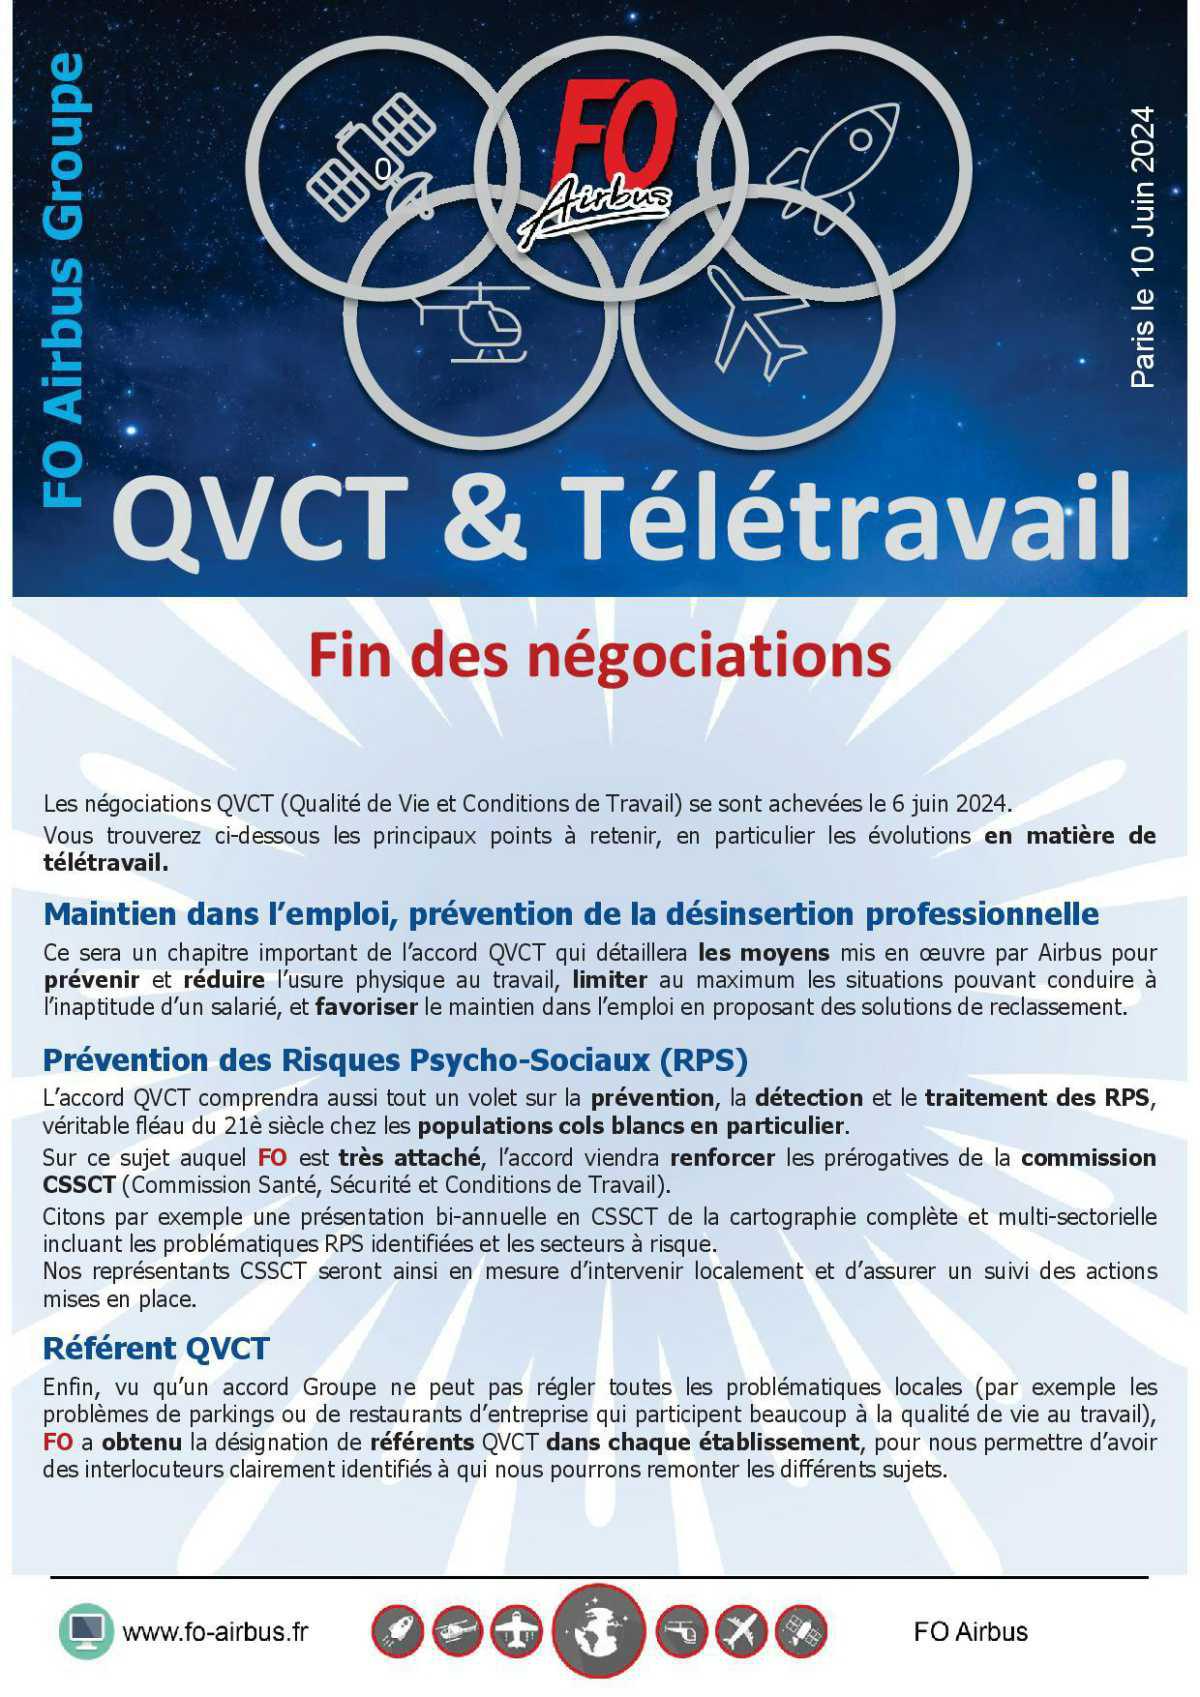 QVCT et Télétravail : Fin des négociations